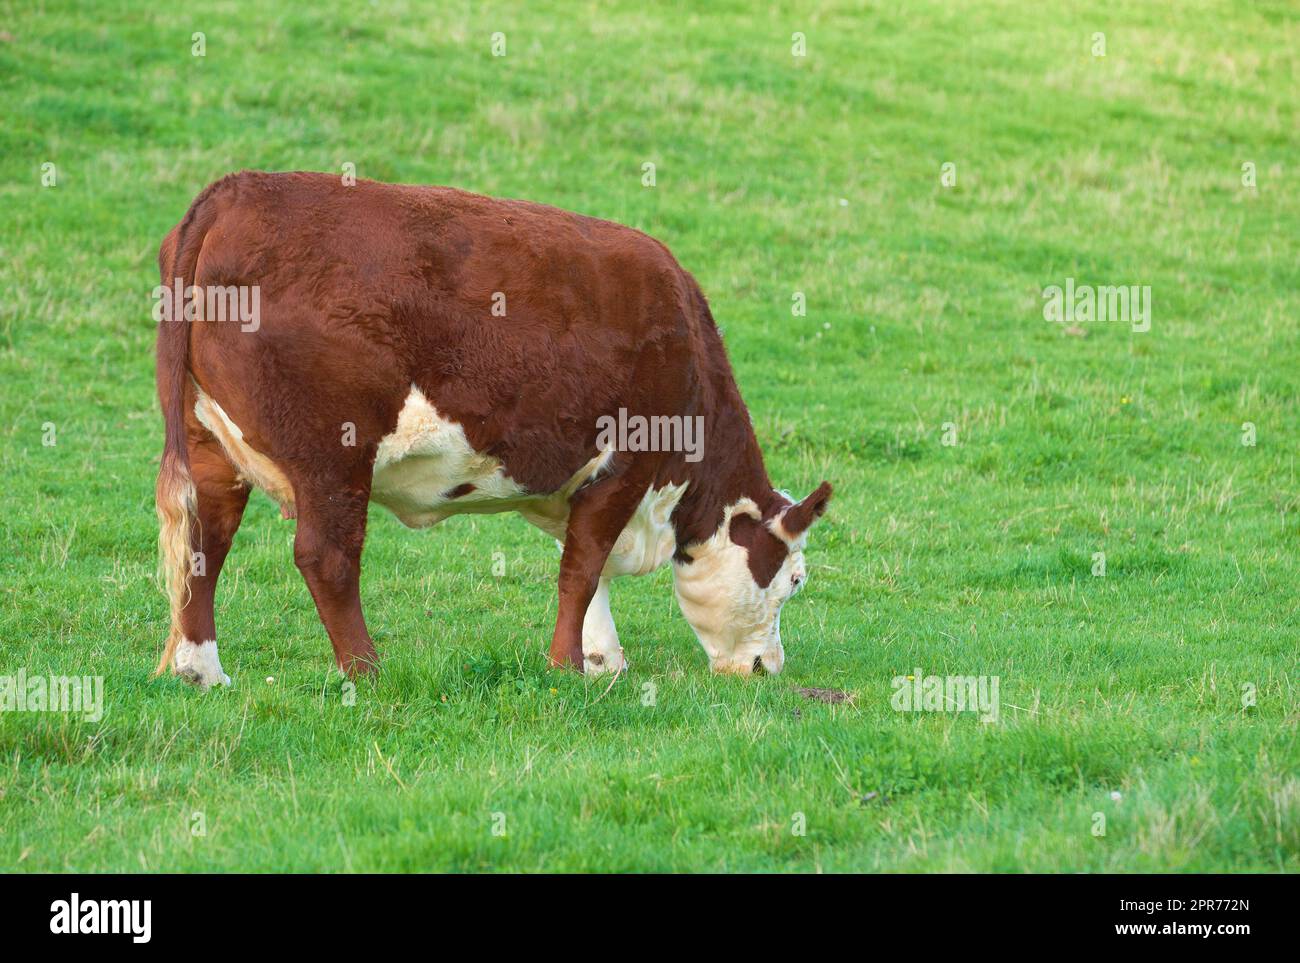 Zuchtrinder für die Rinderhaltung auf einer Wiese zur Erzeugung von Milch oder Rindfleisch. Viehweiden zur Futtergewinnung auf Freiland in der Natur. Kopieren Sie Platz mit einer Kuh, die an einem sonnigen Tag im Freien Gras auf einem Feld isst Stockfoto